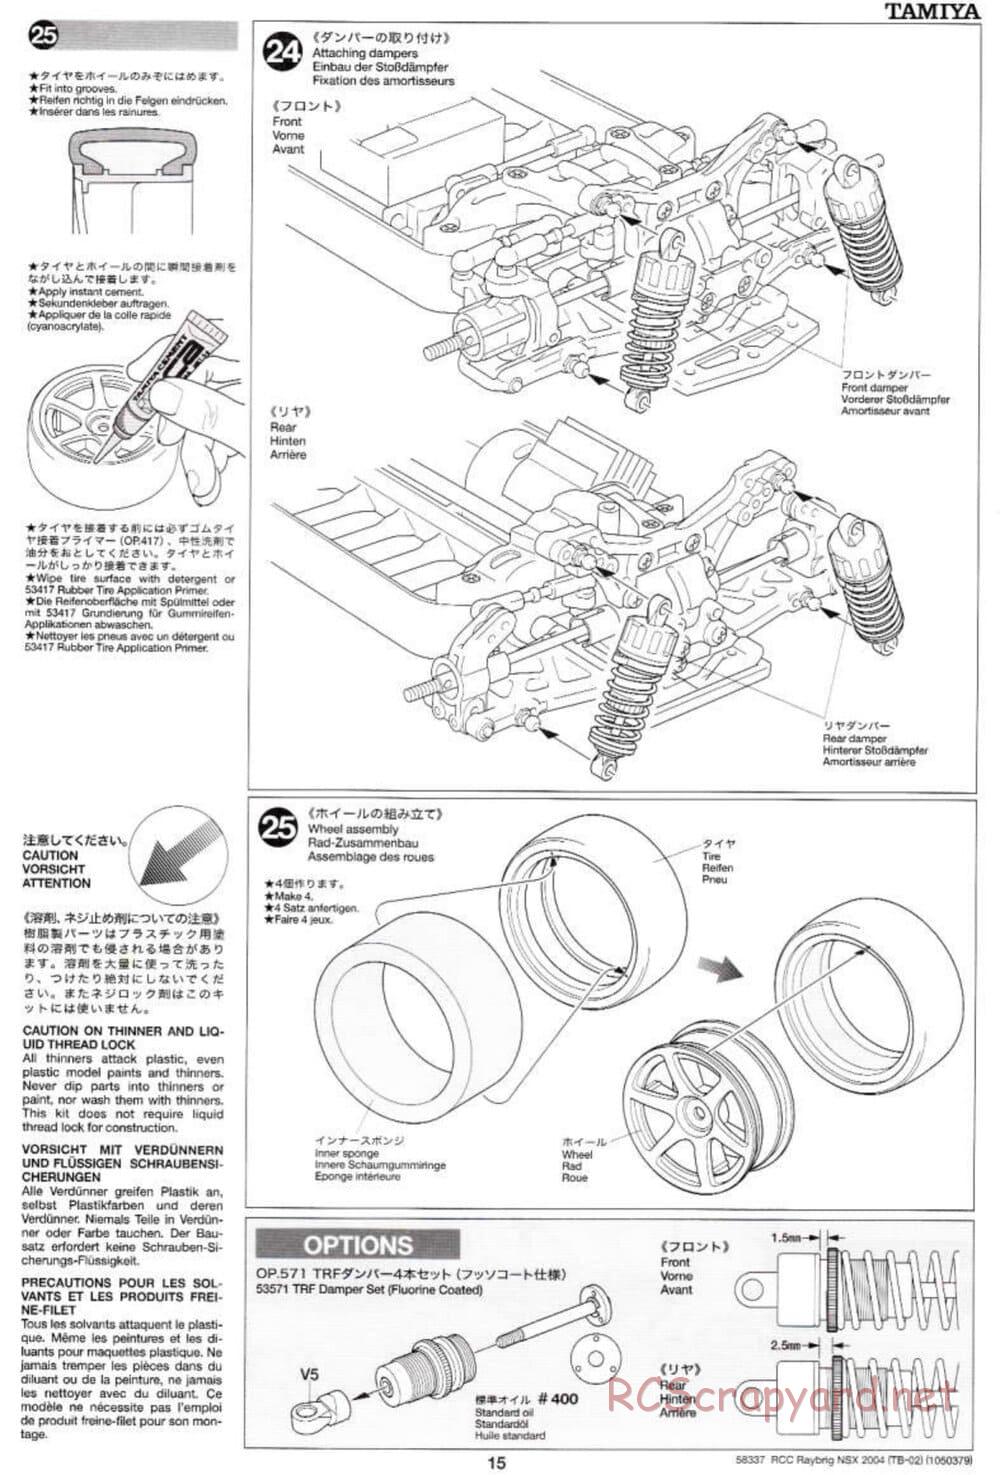 Tamiya - Raybrig NSX 2004 - TB-02 Chassis - Manual - Page 15